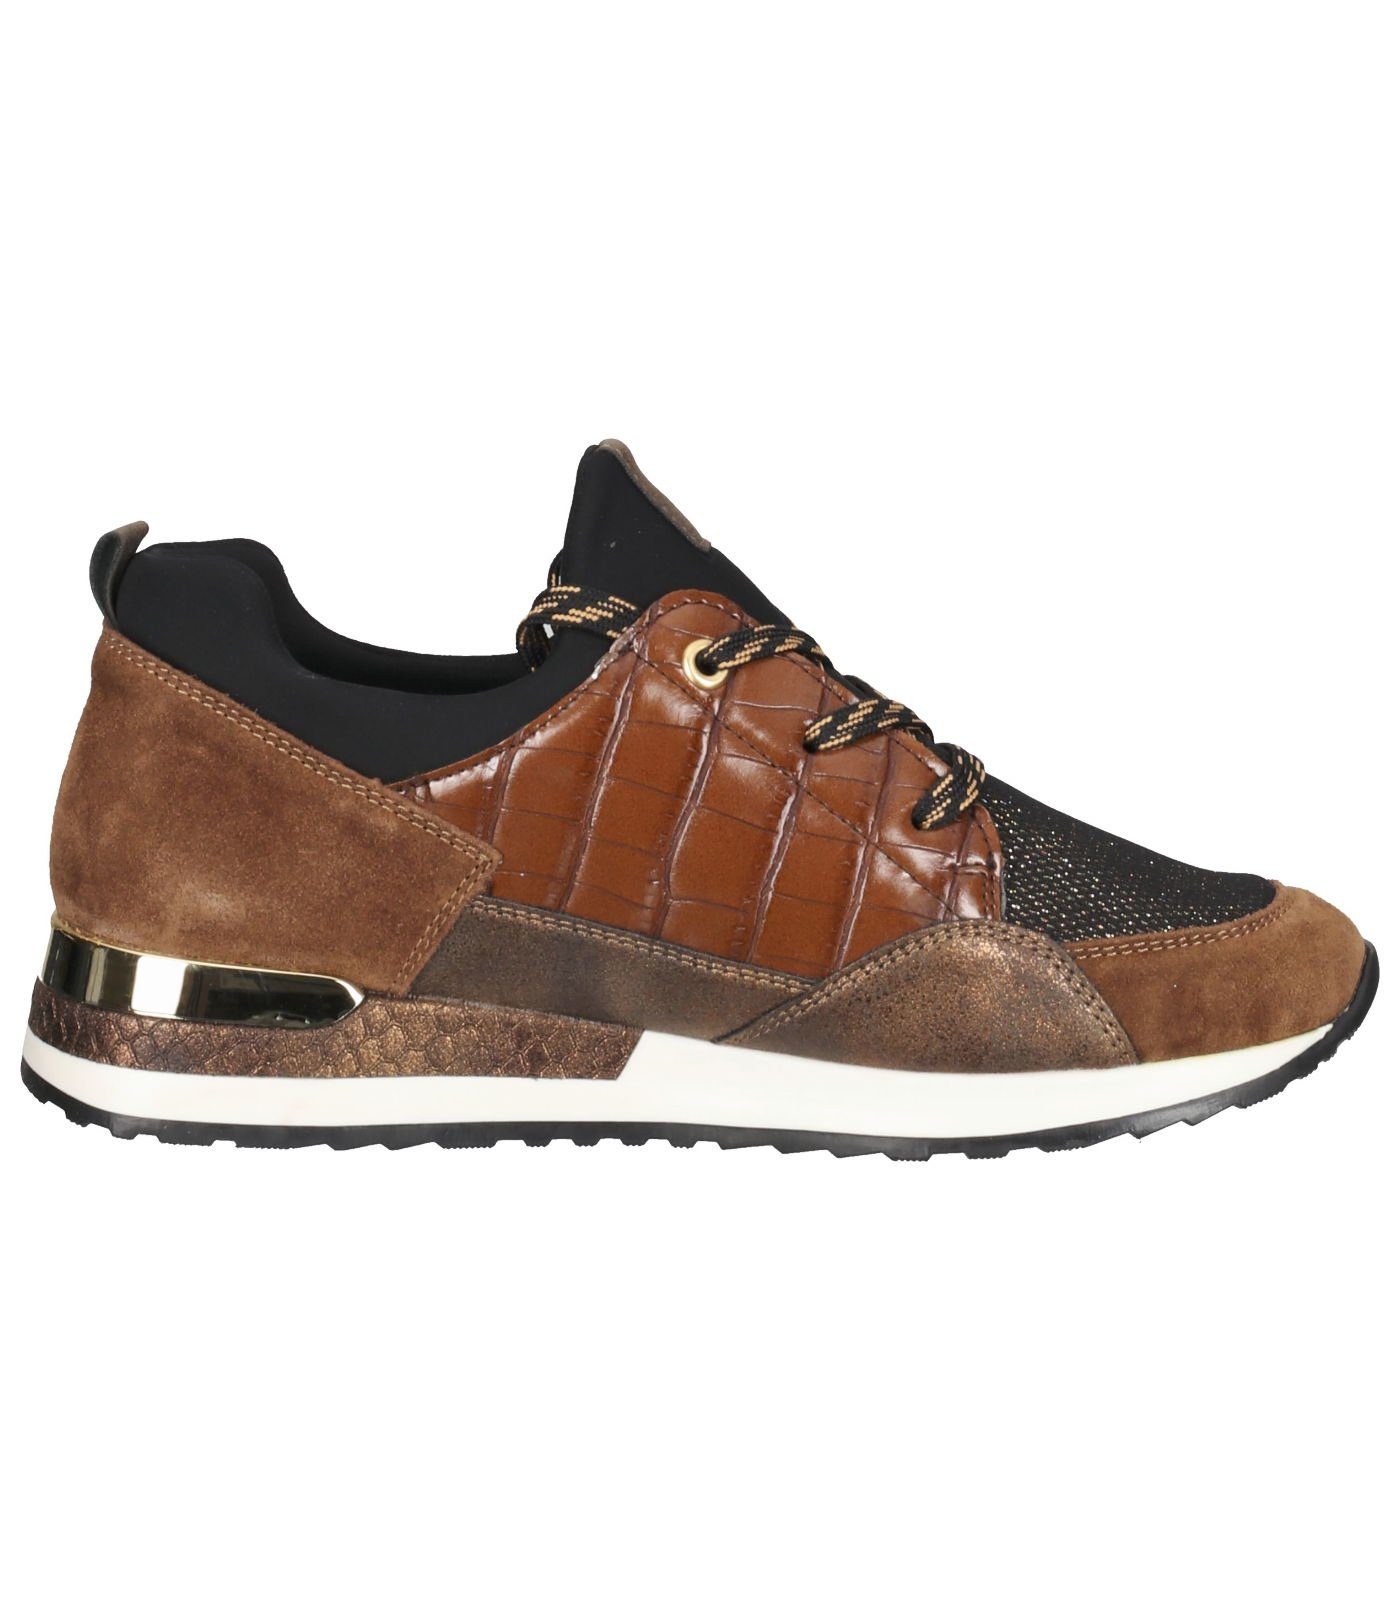 Remonte Sneaker 25 Sneaker Lederimitat amaretto/schwarz-bronze/antik/mogano/schwarz 